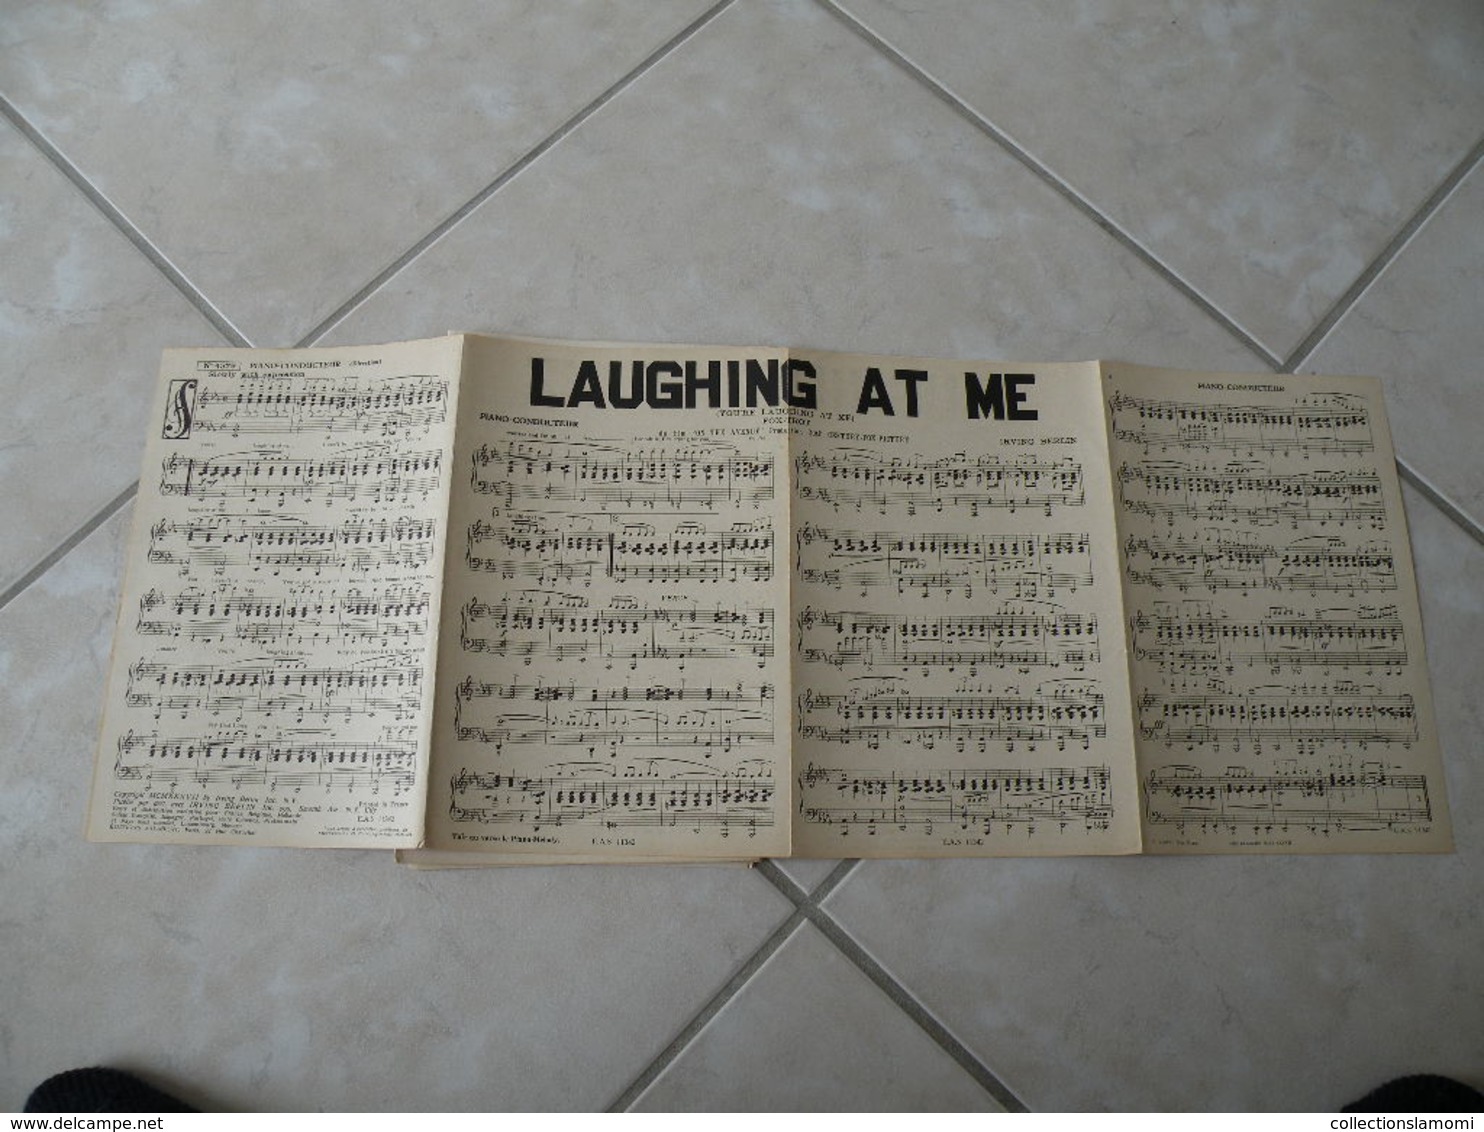 Laughing at me(Irving Berlin du film OnThe Avenue)(Paroles)(Musique)Partition pour orchestre 1937